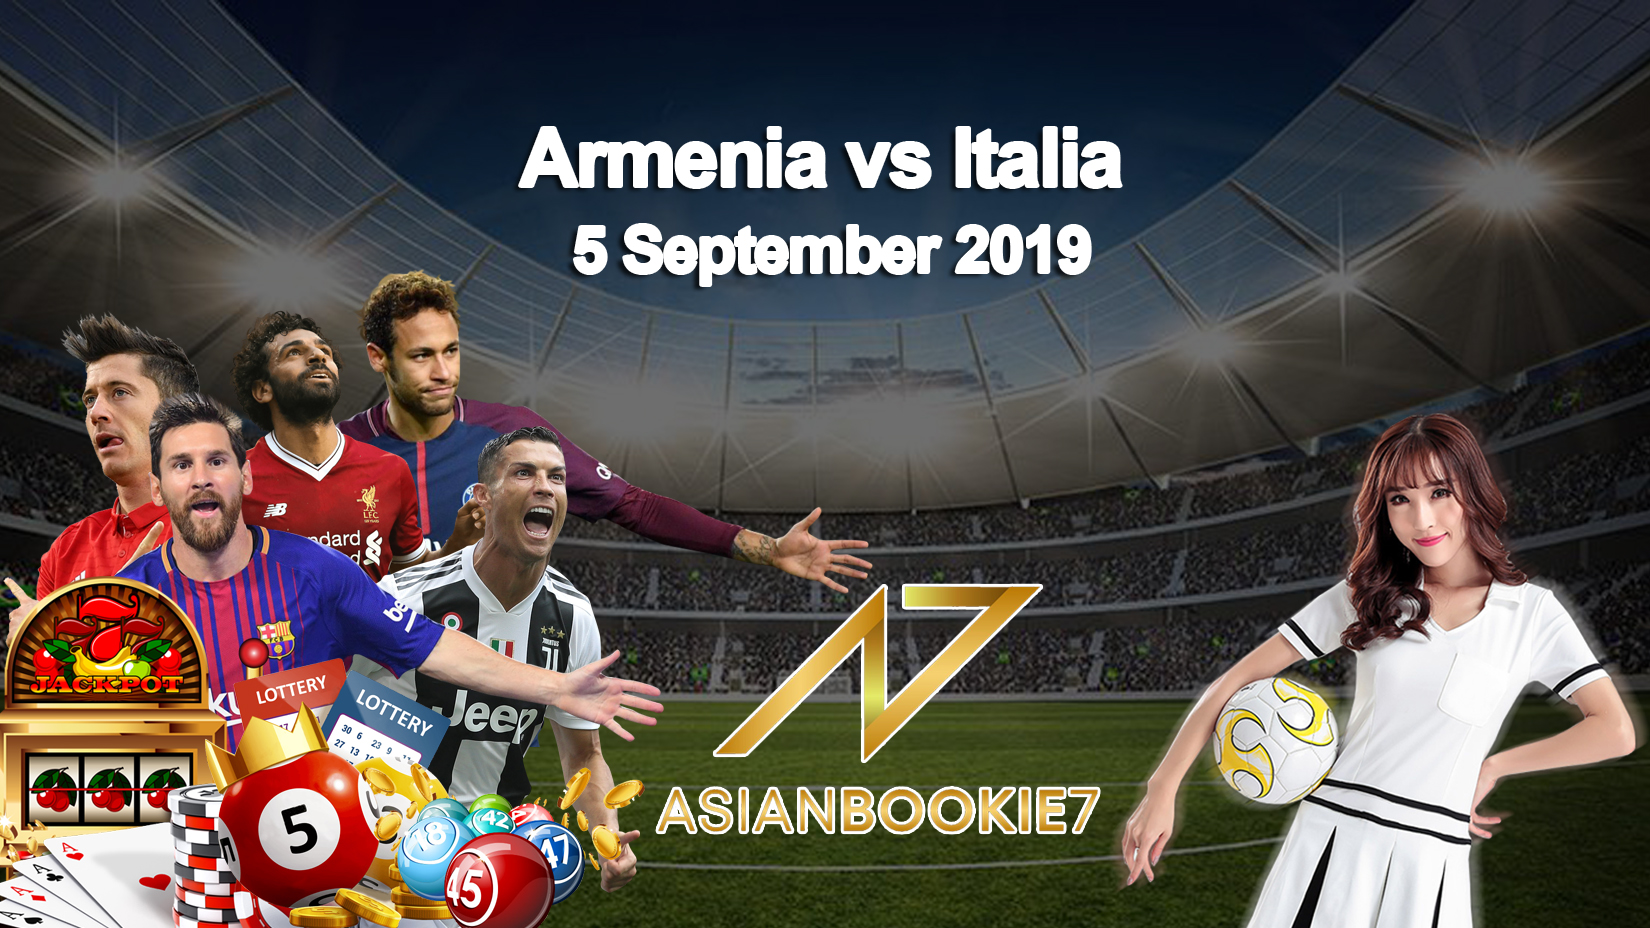 Prediksi Armenia vs Italia 5 September 2019